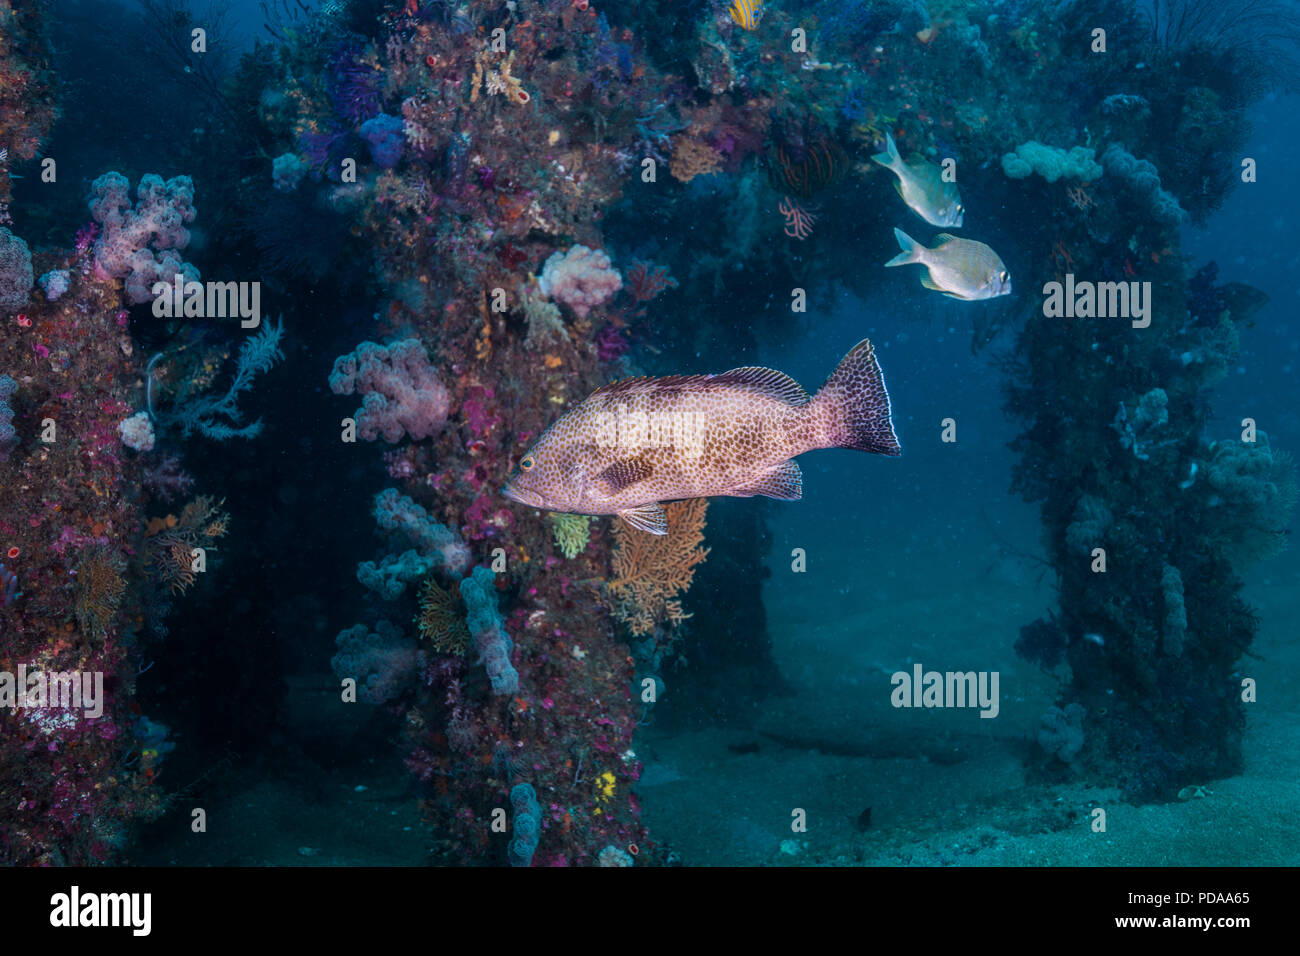 Areolate grouper, Epinephelus areolatus (Forsskål, 1775) nager autour de poissons coralliens artificiels. Owase, Mie, Japon. -20m Banque D'Images